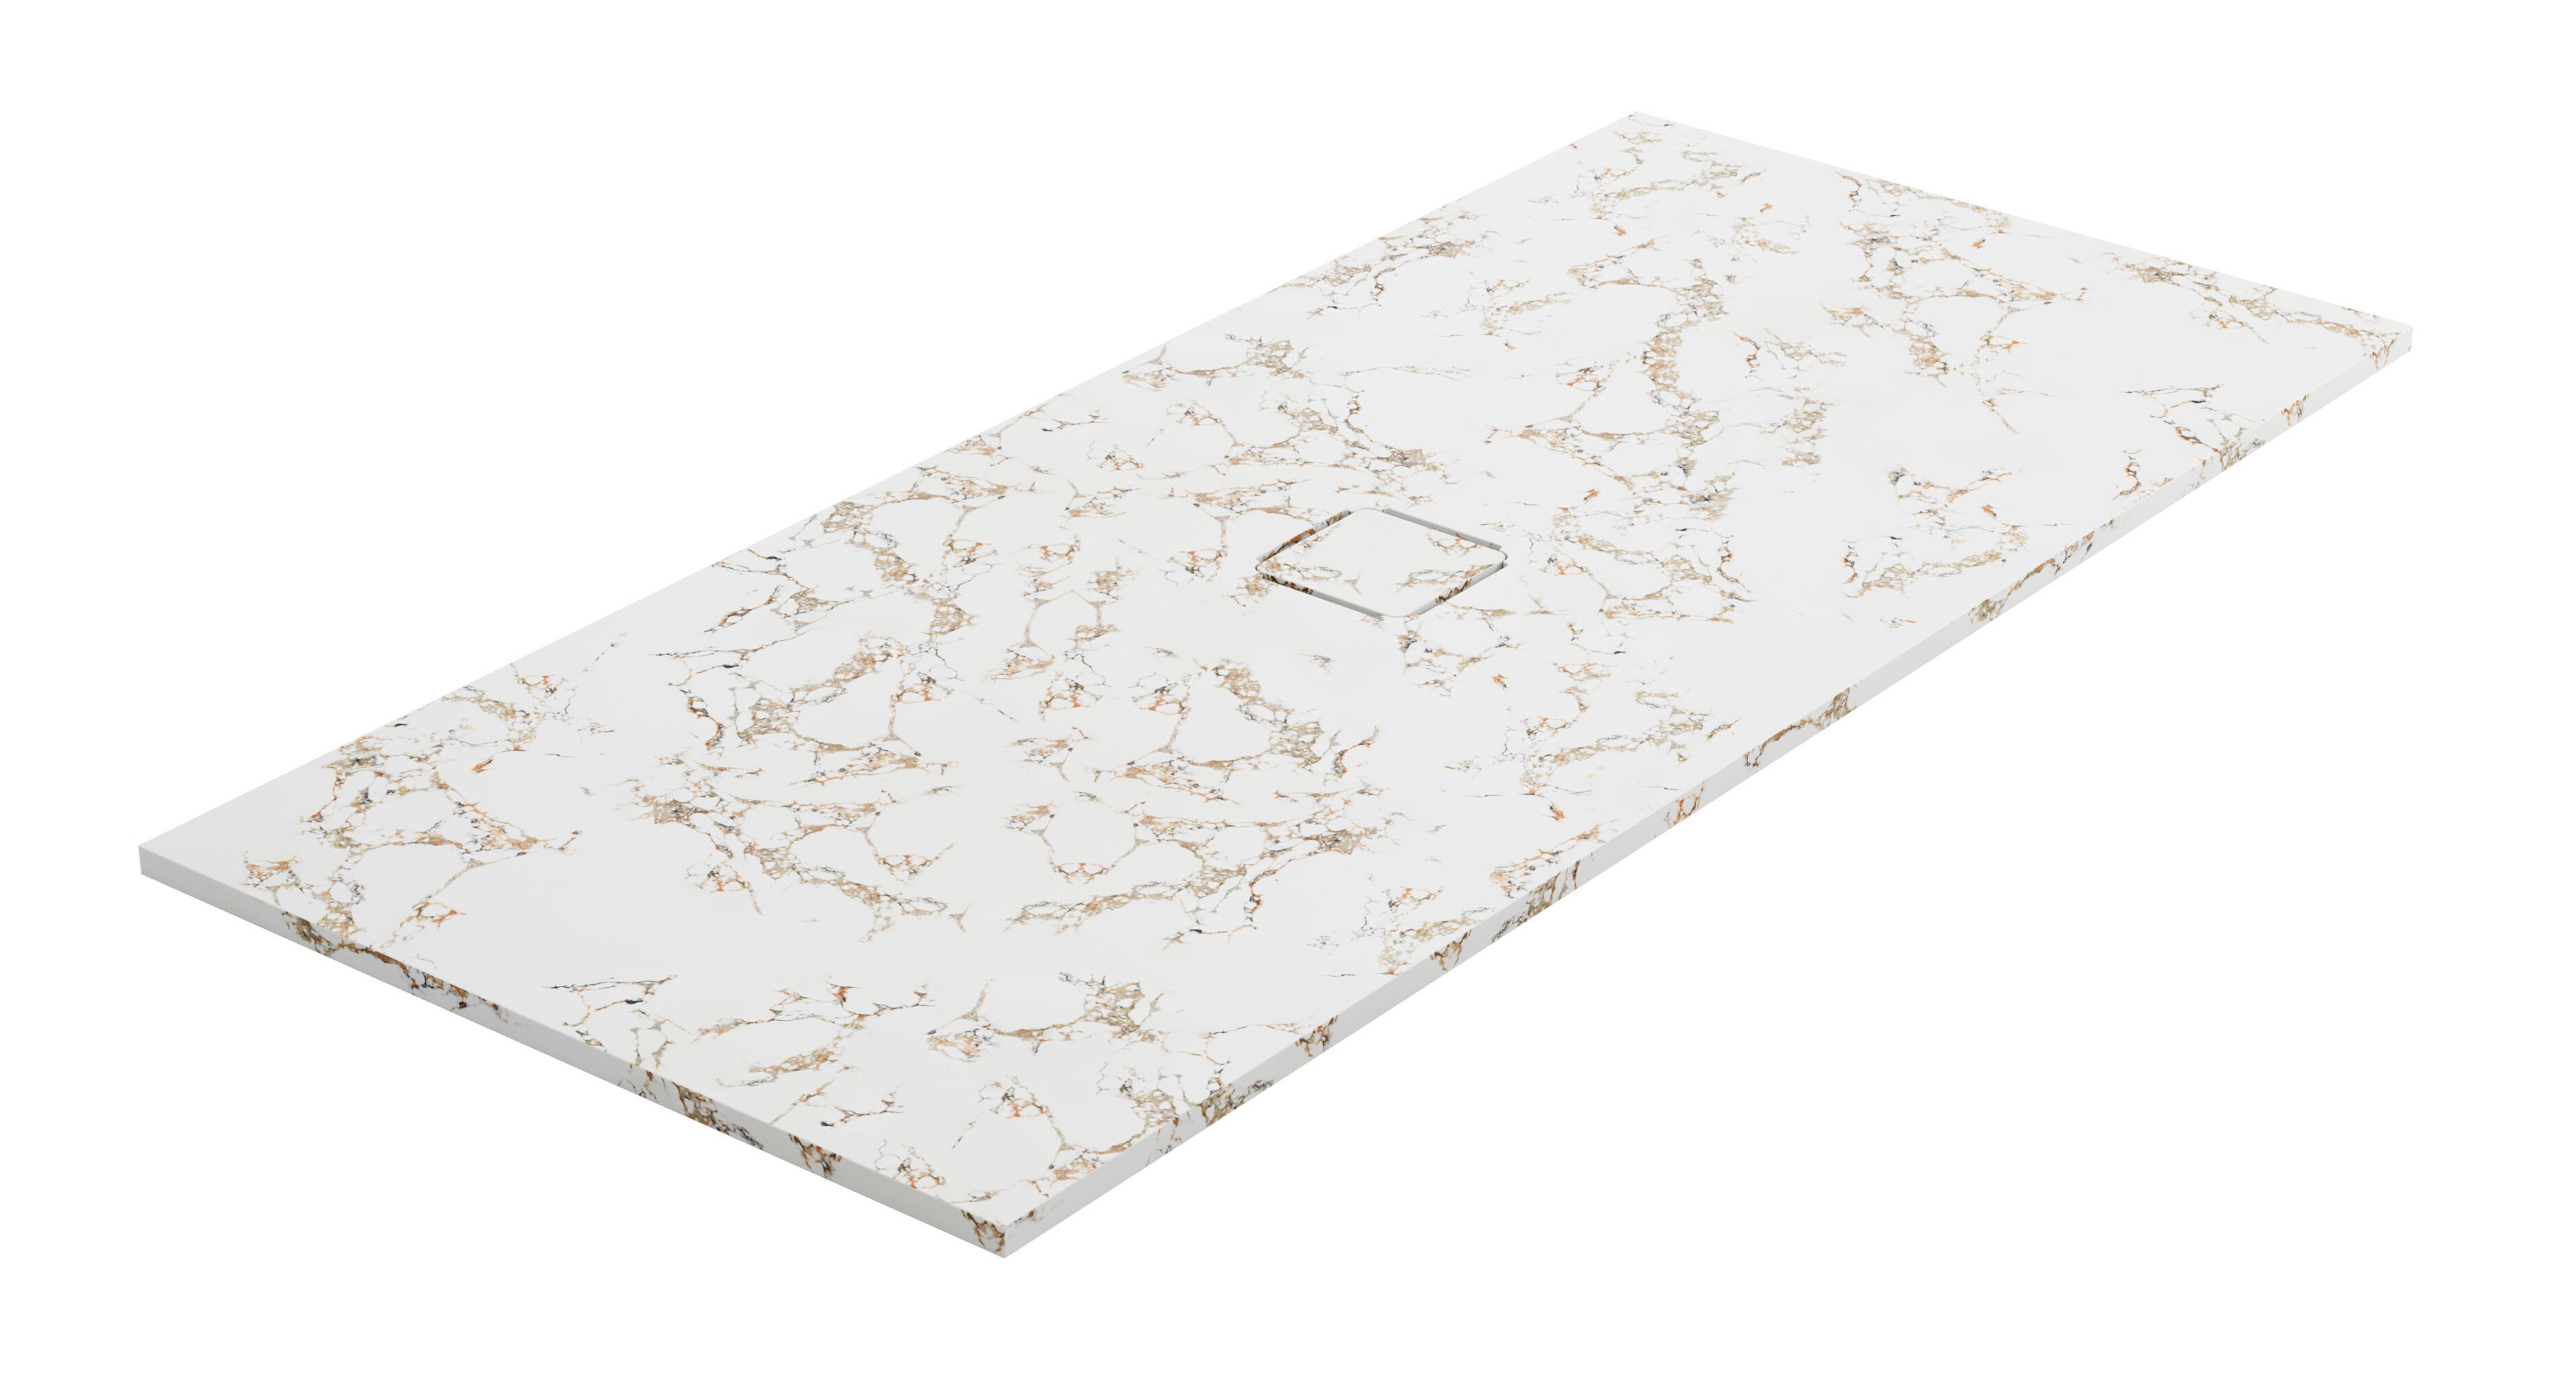 Plato de ducha kue 100x70 cm blanco